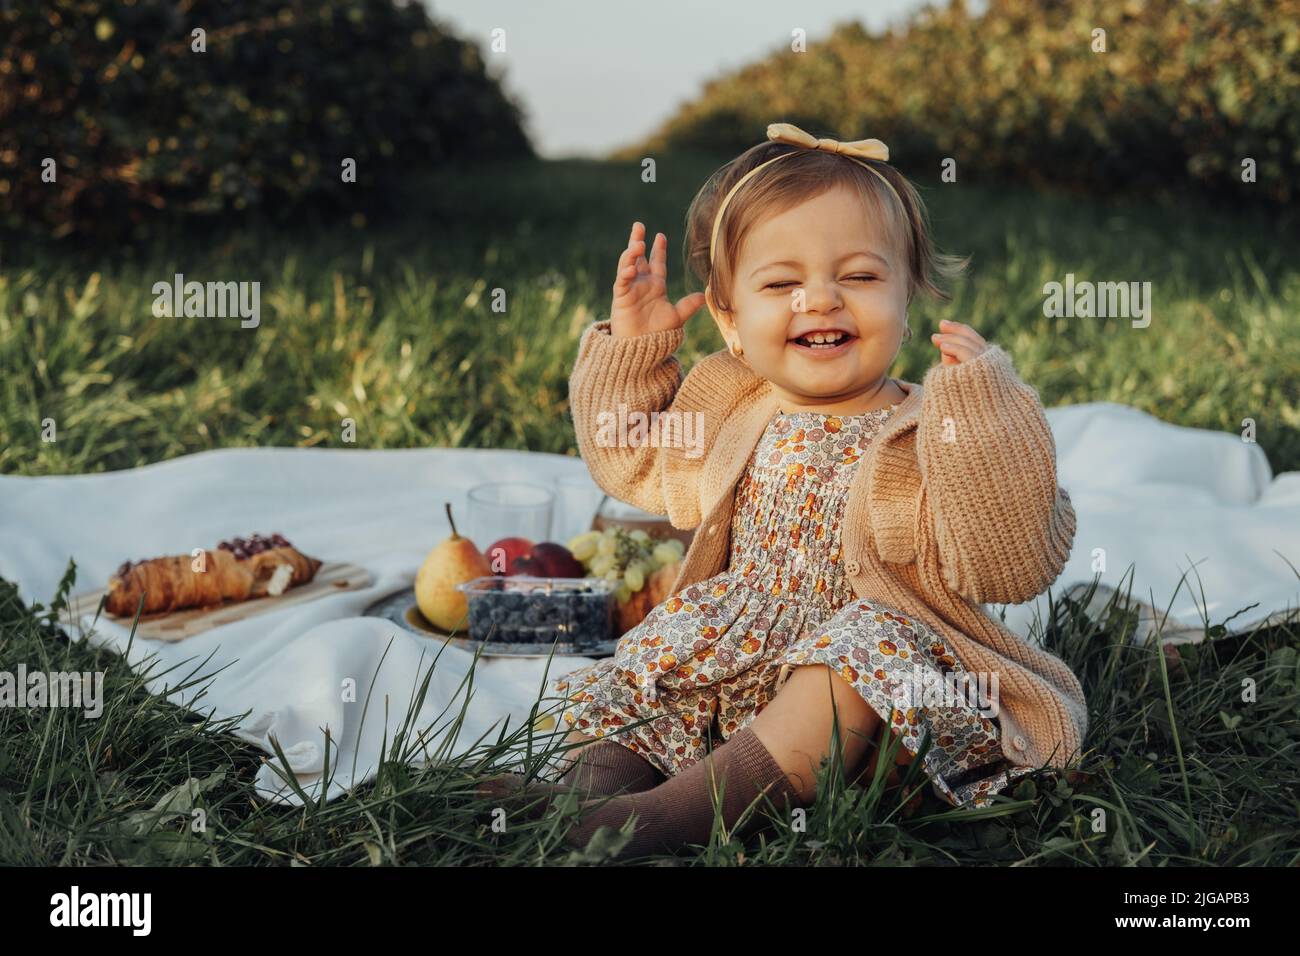 Porträt eines fröhlichen kleinen Mädchens, das auf einem Plaid auf einem Picknick im Freien bei Sonnenuntergang sitzt Stockfoto